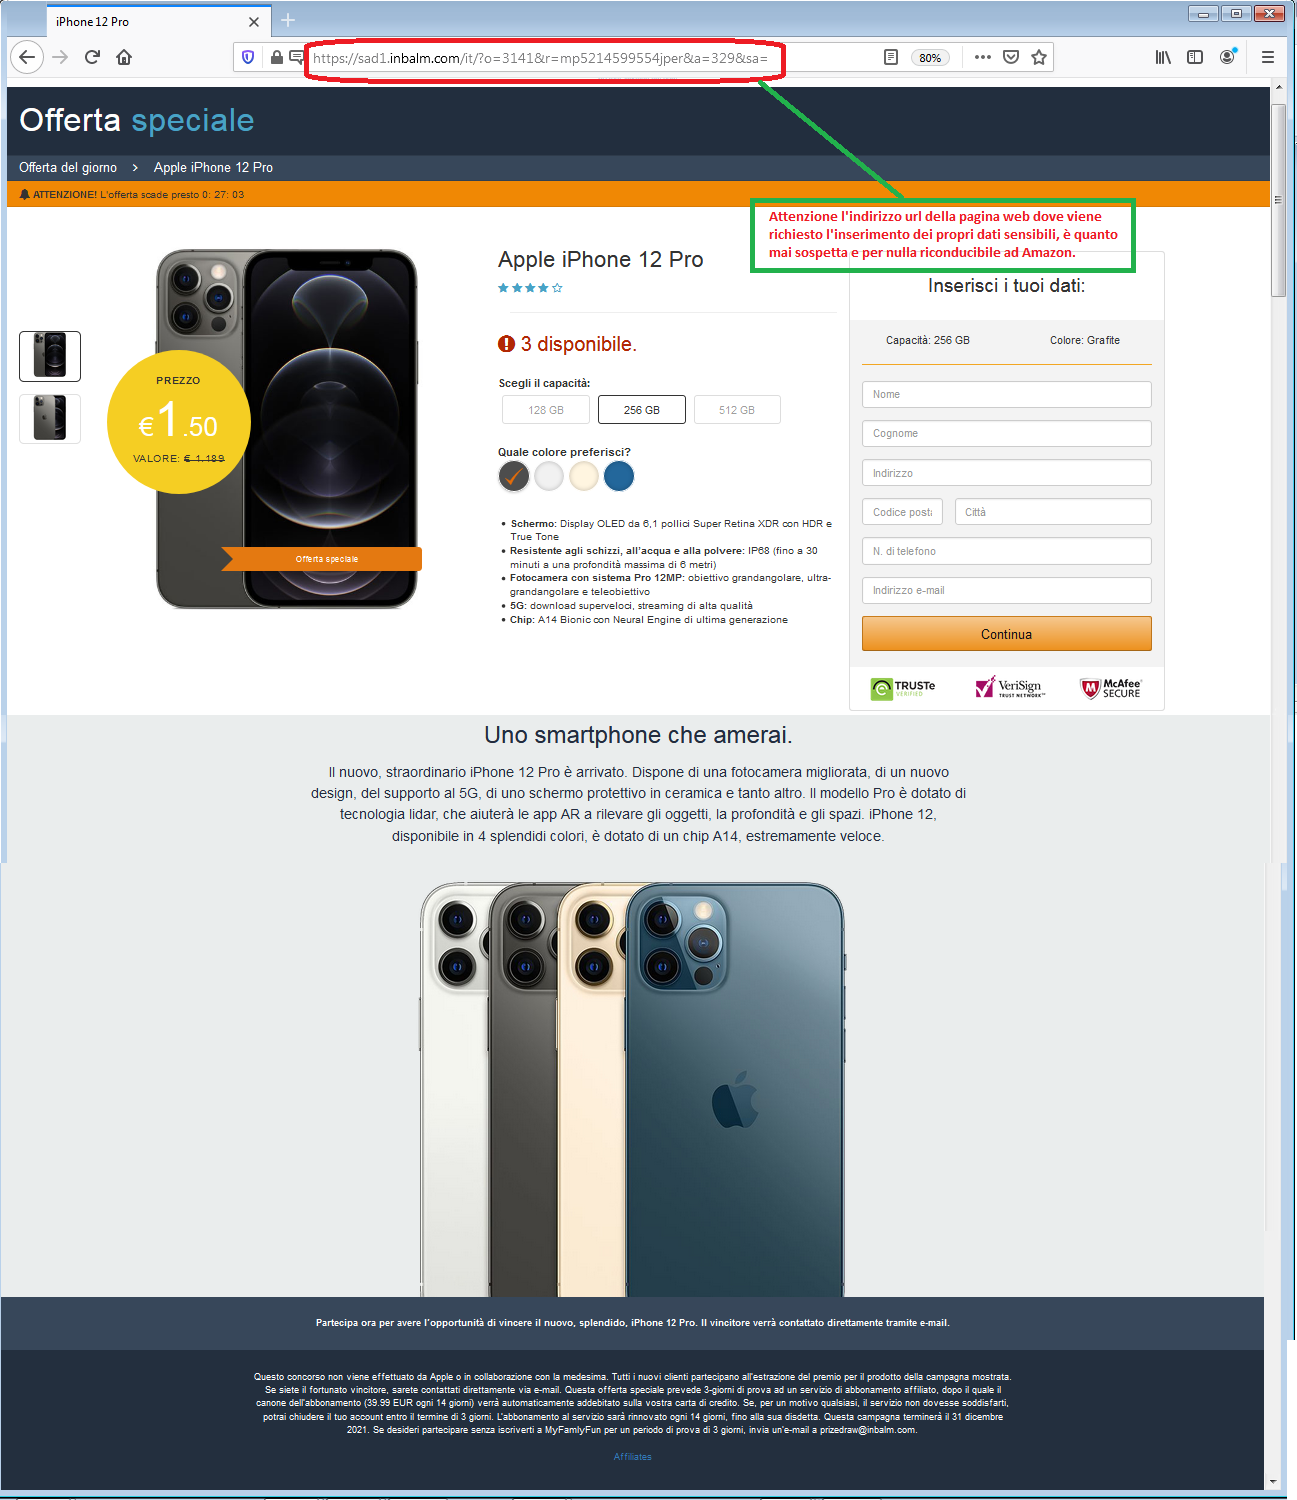 Clicca per ingrandire l'immagine della falsa pagina web di Amazon, dove vengono richiesti i propri dati per vincere un iPhone 11 Pro!